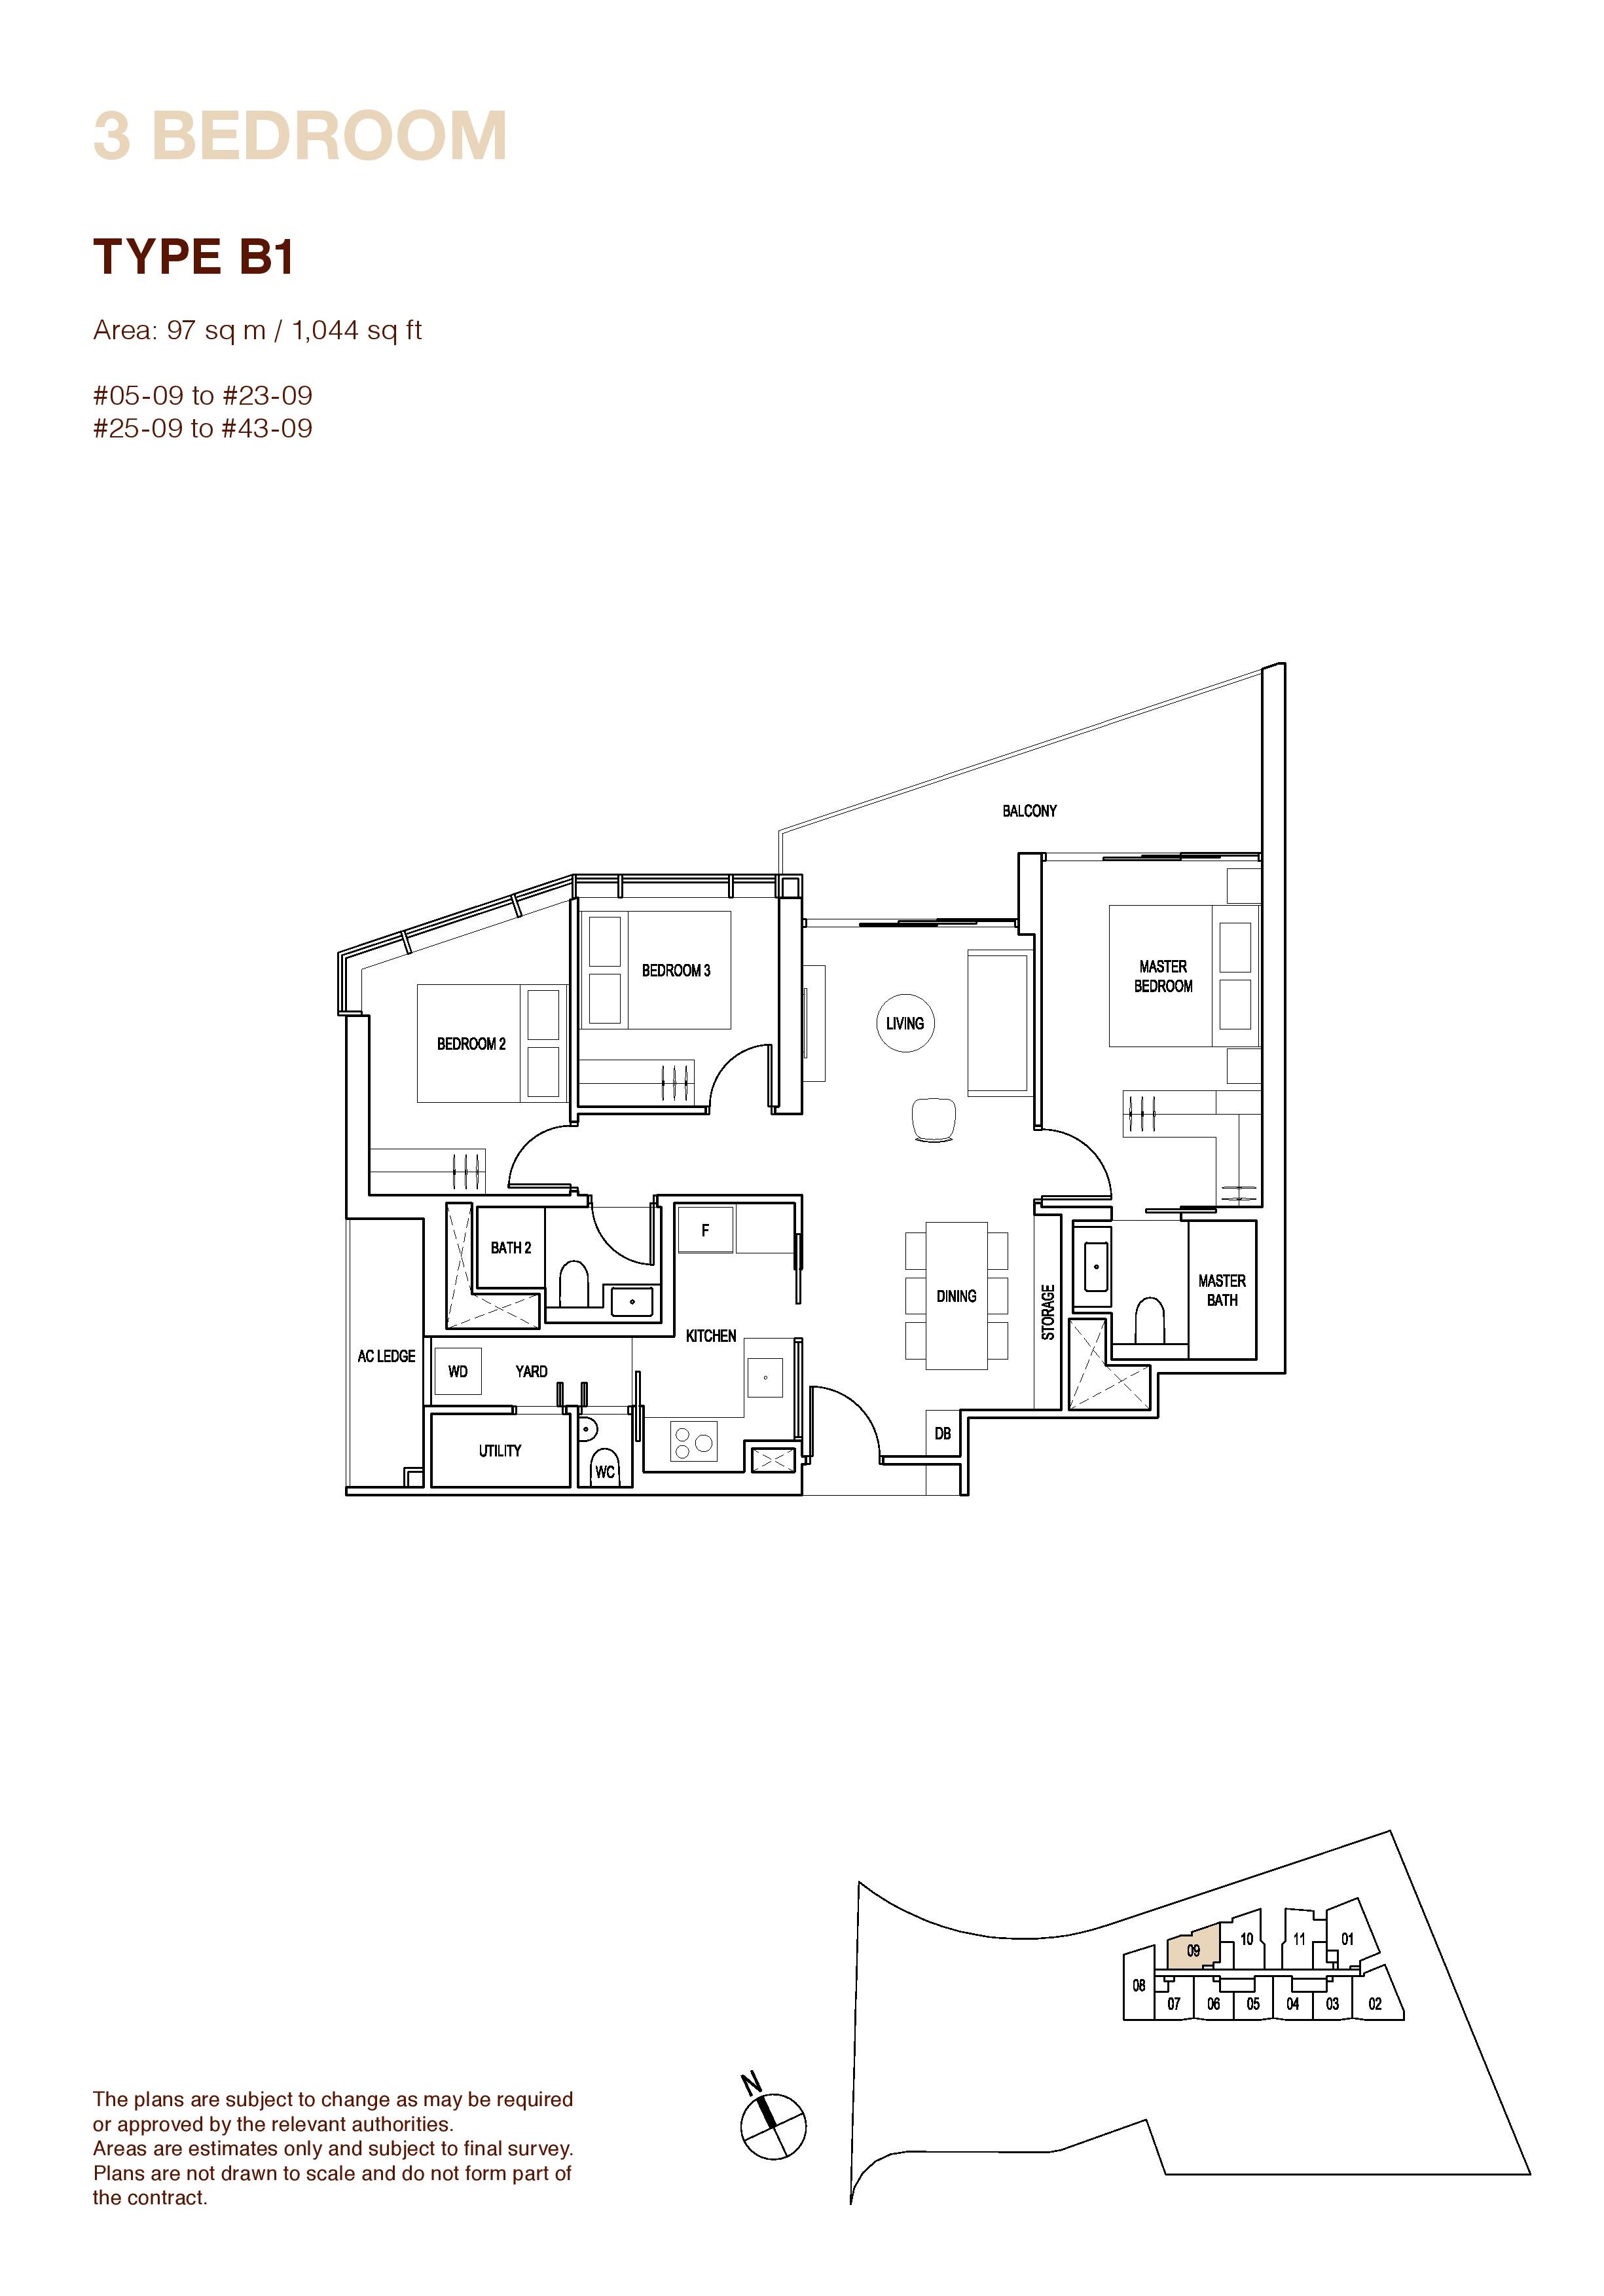 Artra 3 Bedroom Floor Plans Type B1